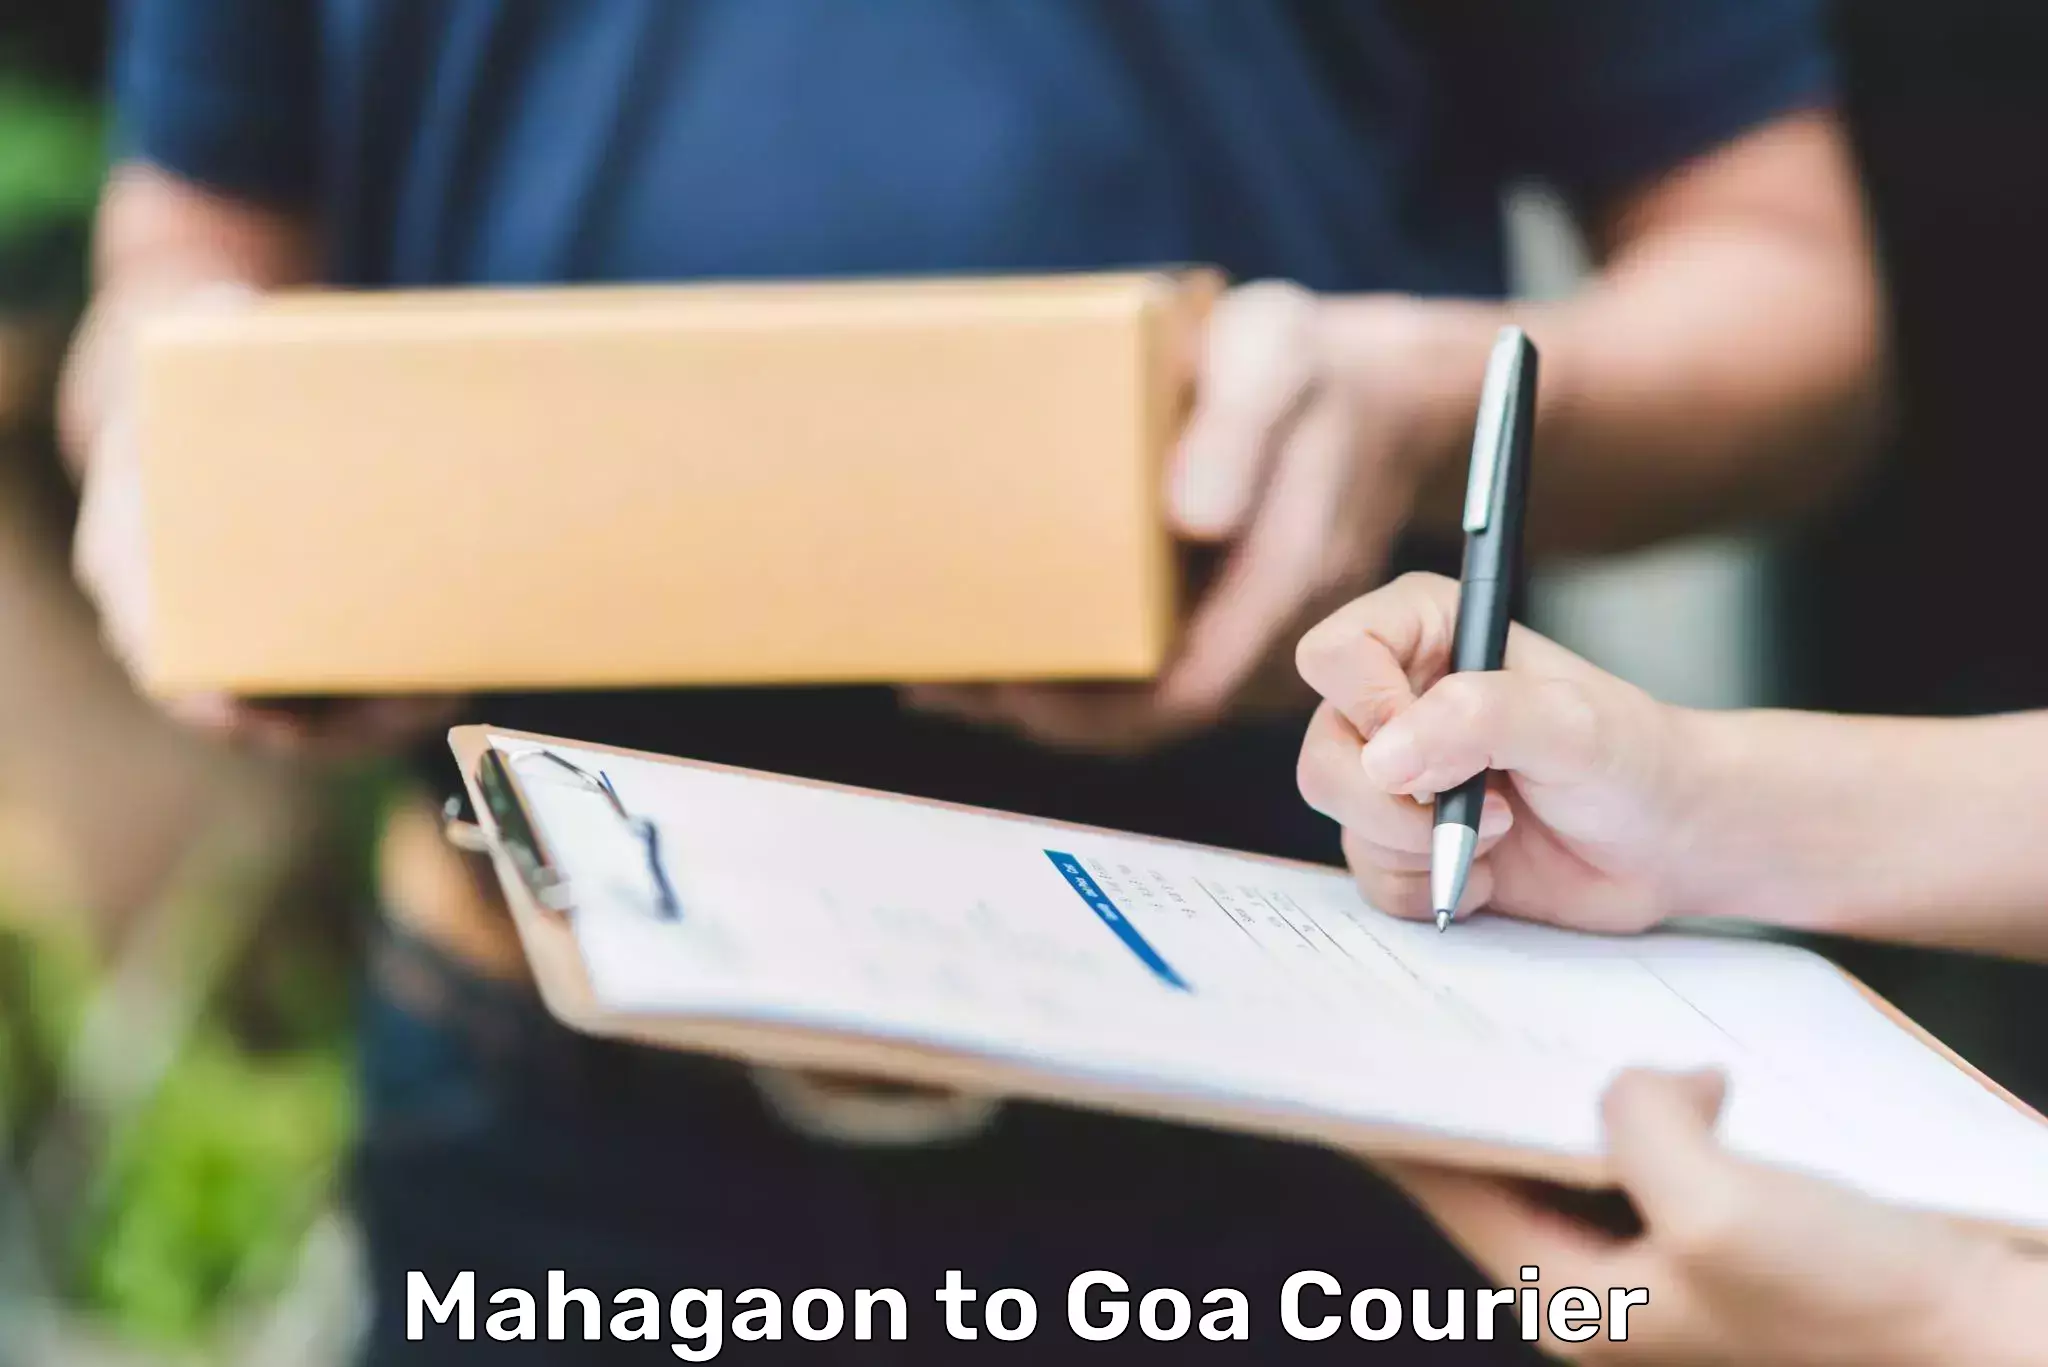 24/7 courier service Mahagaon to Bardez